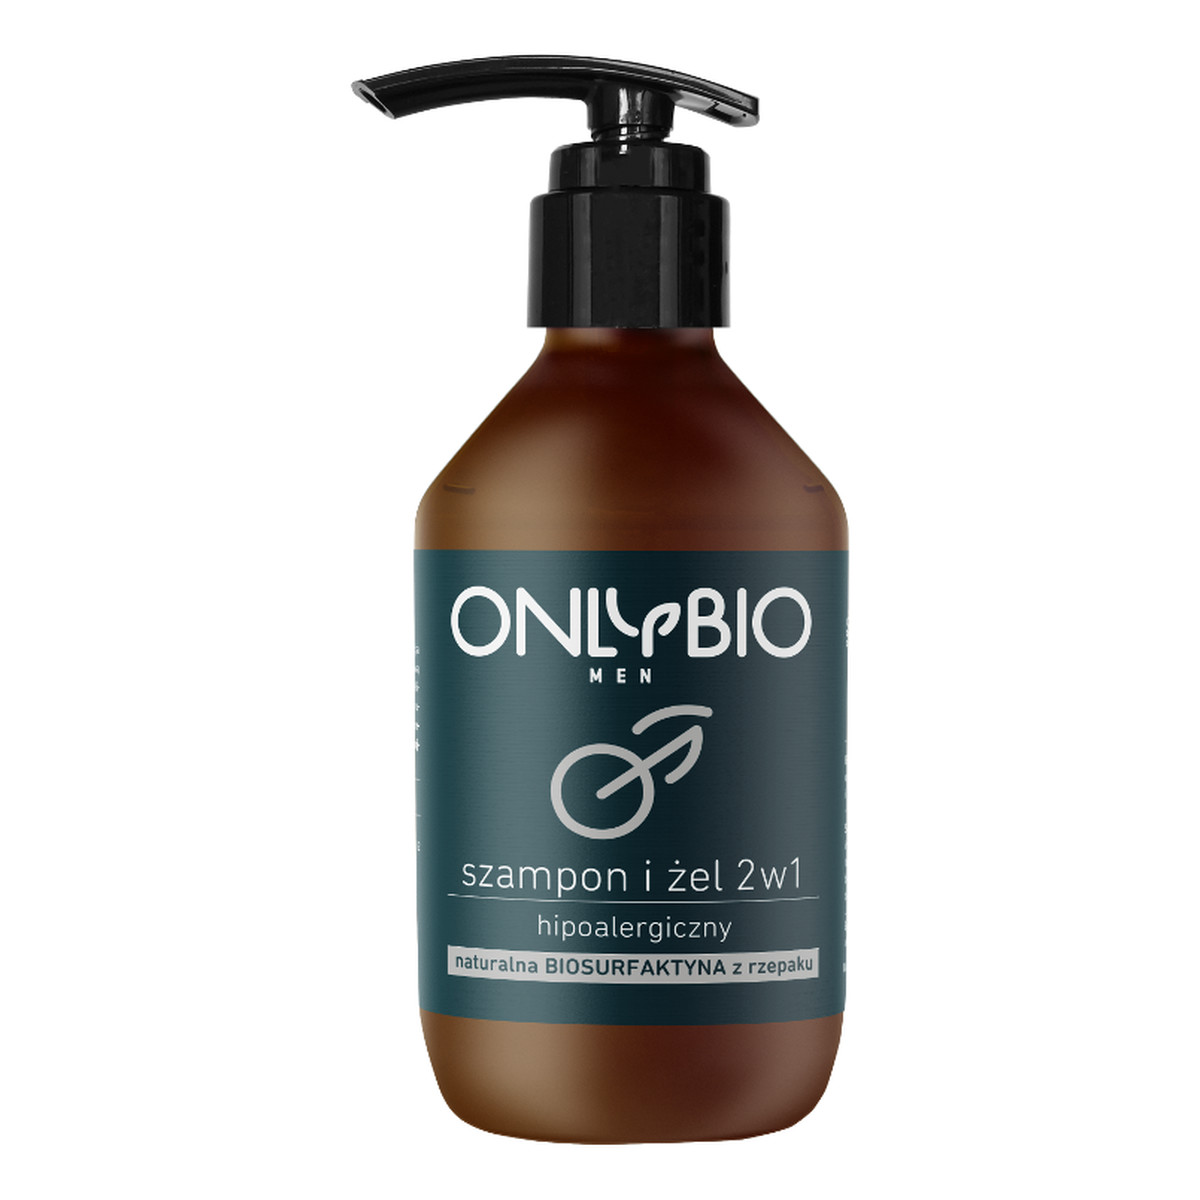 OnlyBio Men hipoalergiczny szampon i żel 2w1 z olejem ze rzepaku 250ml